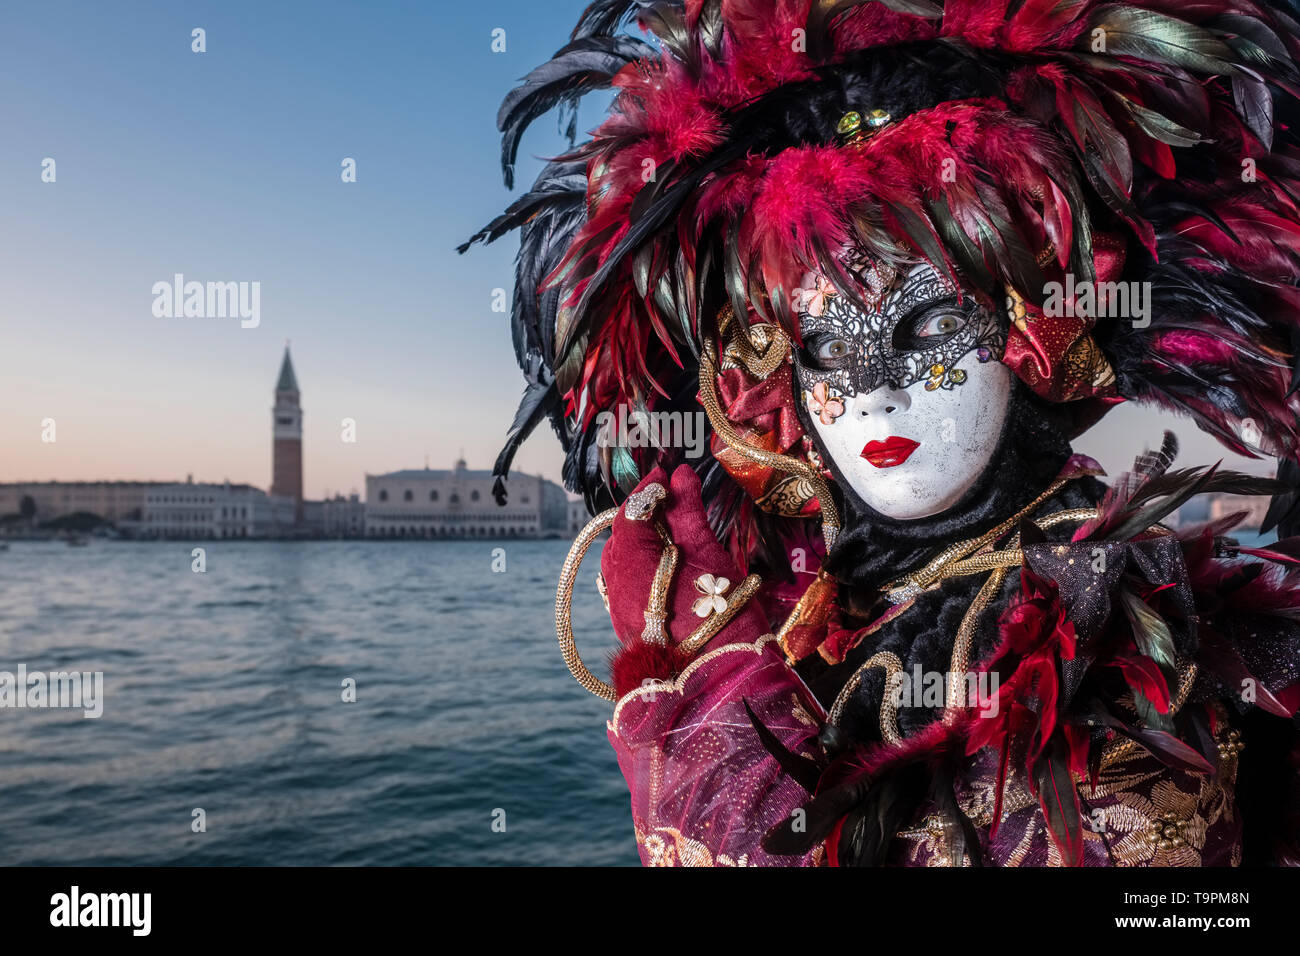 Portrait of a feminin masked person in a beautiful creative costume, posing on the island San Giorgio di Maggiore, celebrating the Venetian Carnival Stock Photo